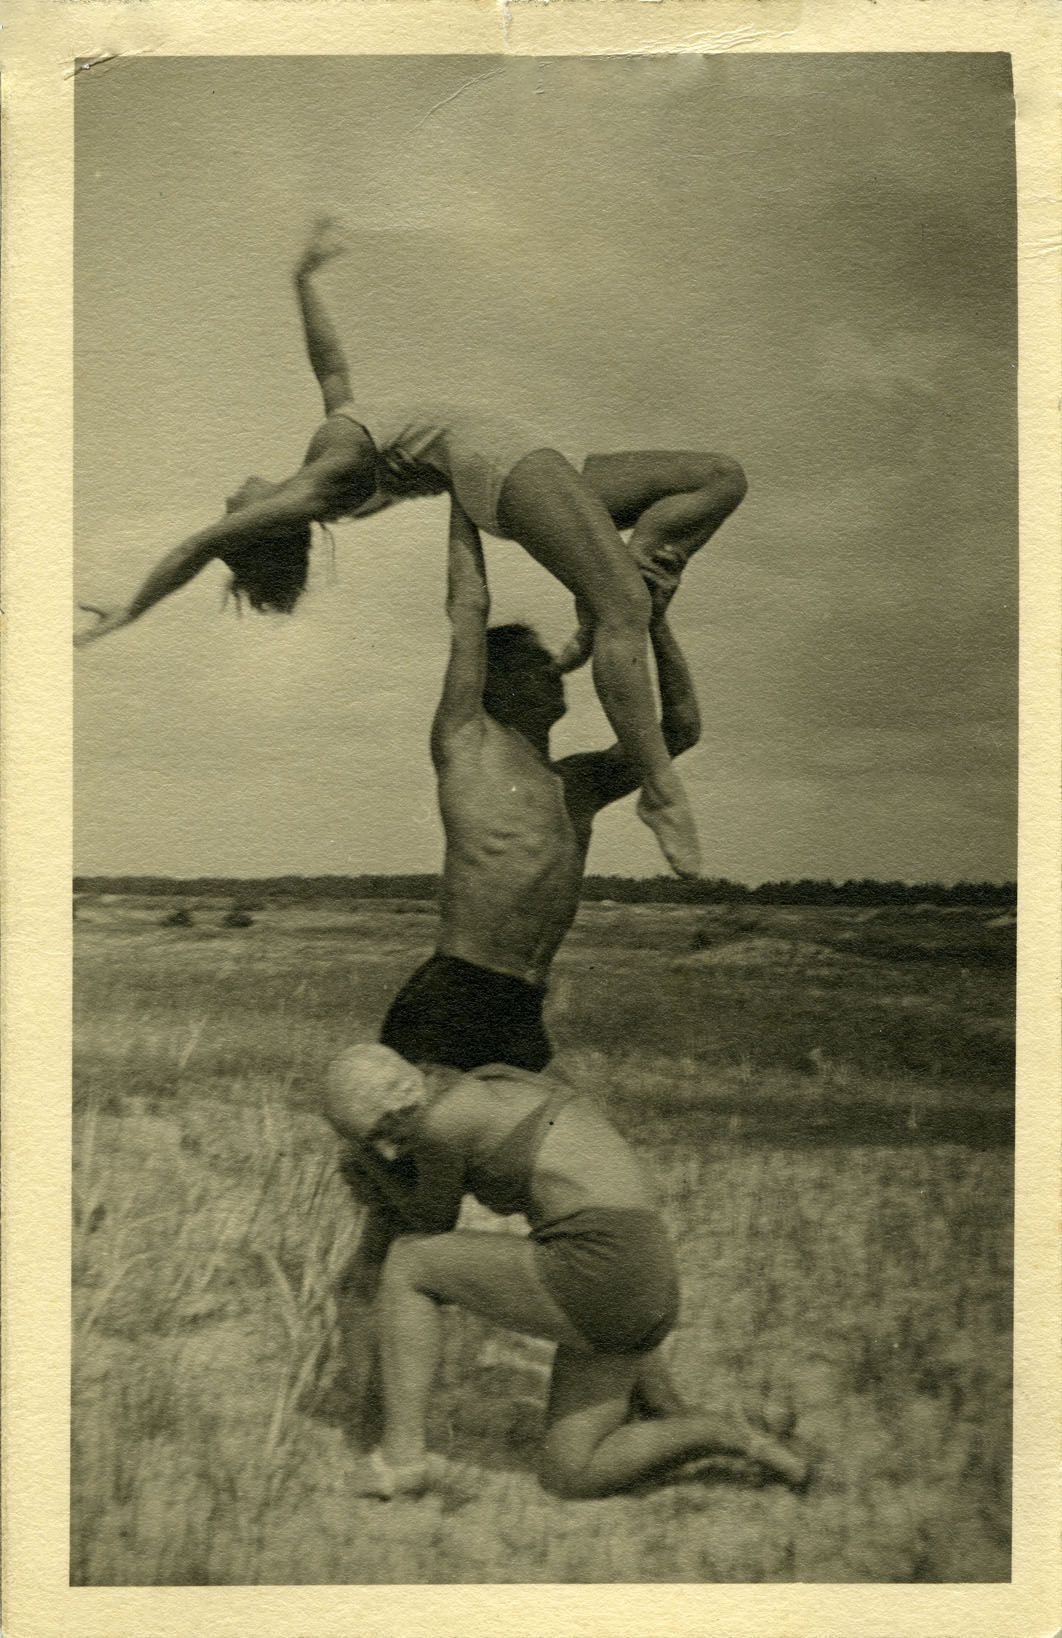 Baleto artistai Marija Juozapaitytė (būsima Kelbauskienė), Bronius Kelbauskas ir Olga Dubeneckienė-Kalpokienė kopose. 1930. LTMKM A 1095/159.